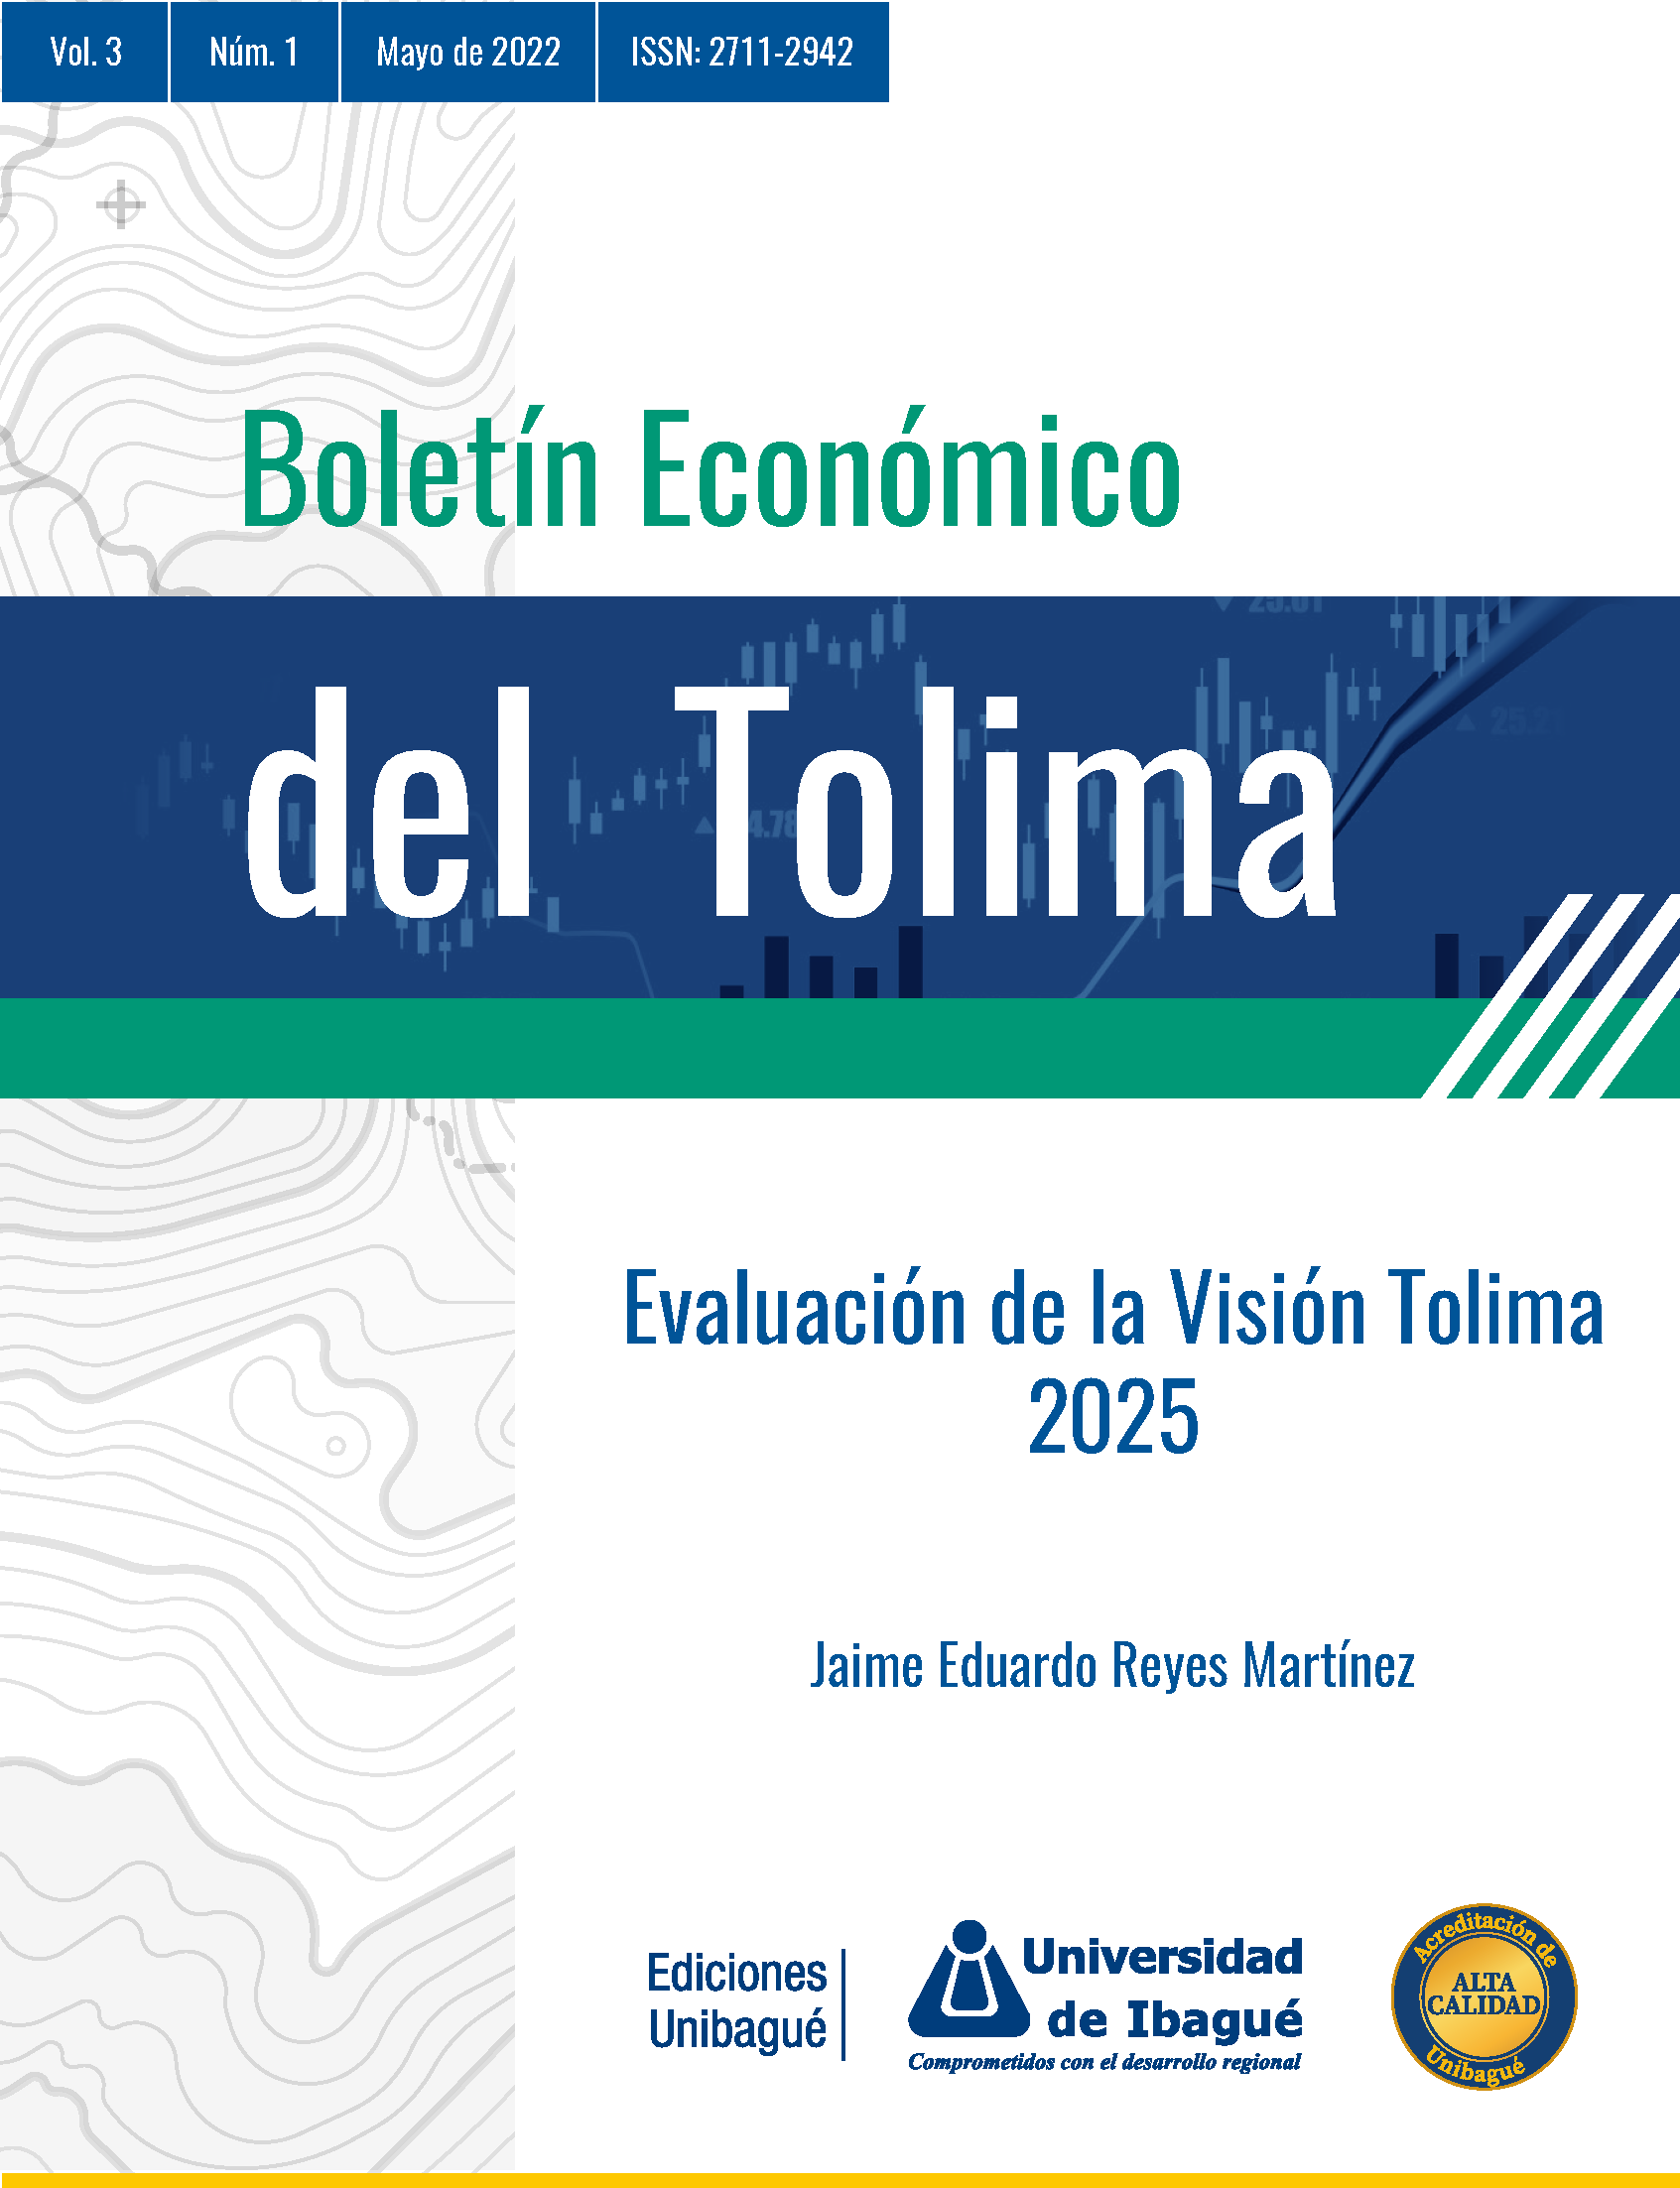 Cover of Boletín Económico del Tolima